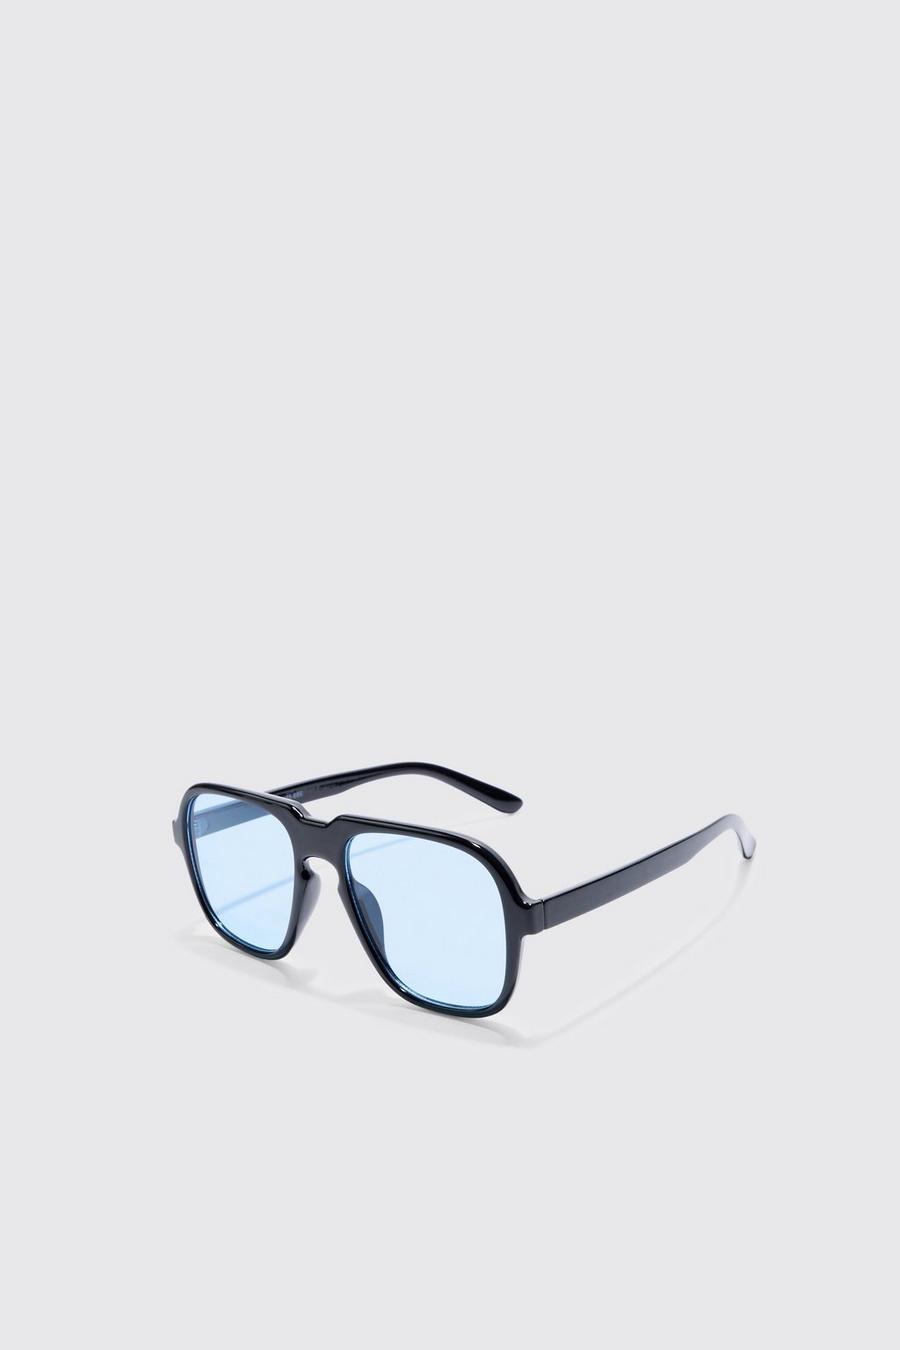 Gafas de sol estilo retro con lentes azules, Black